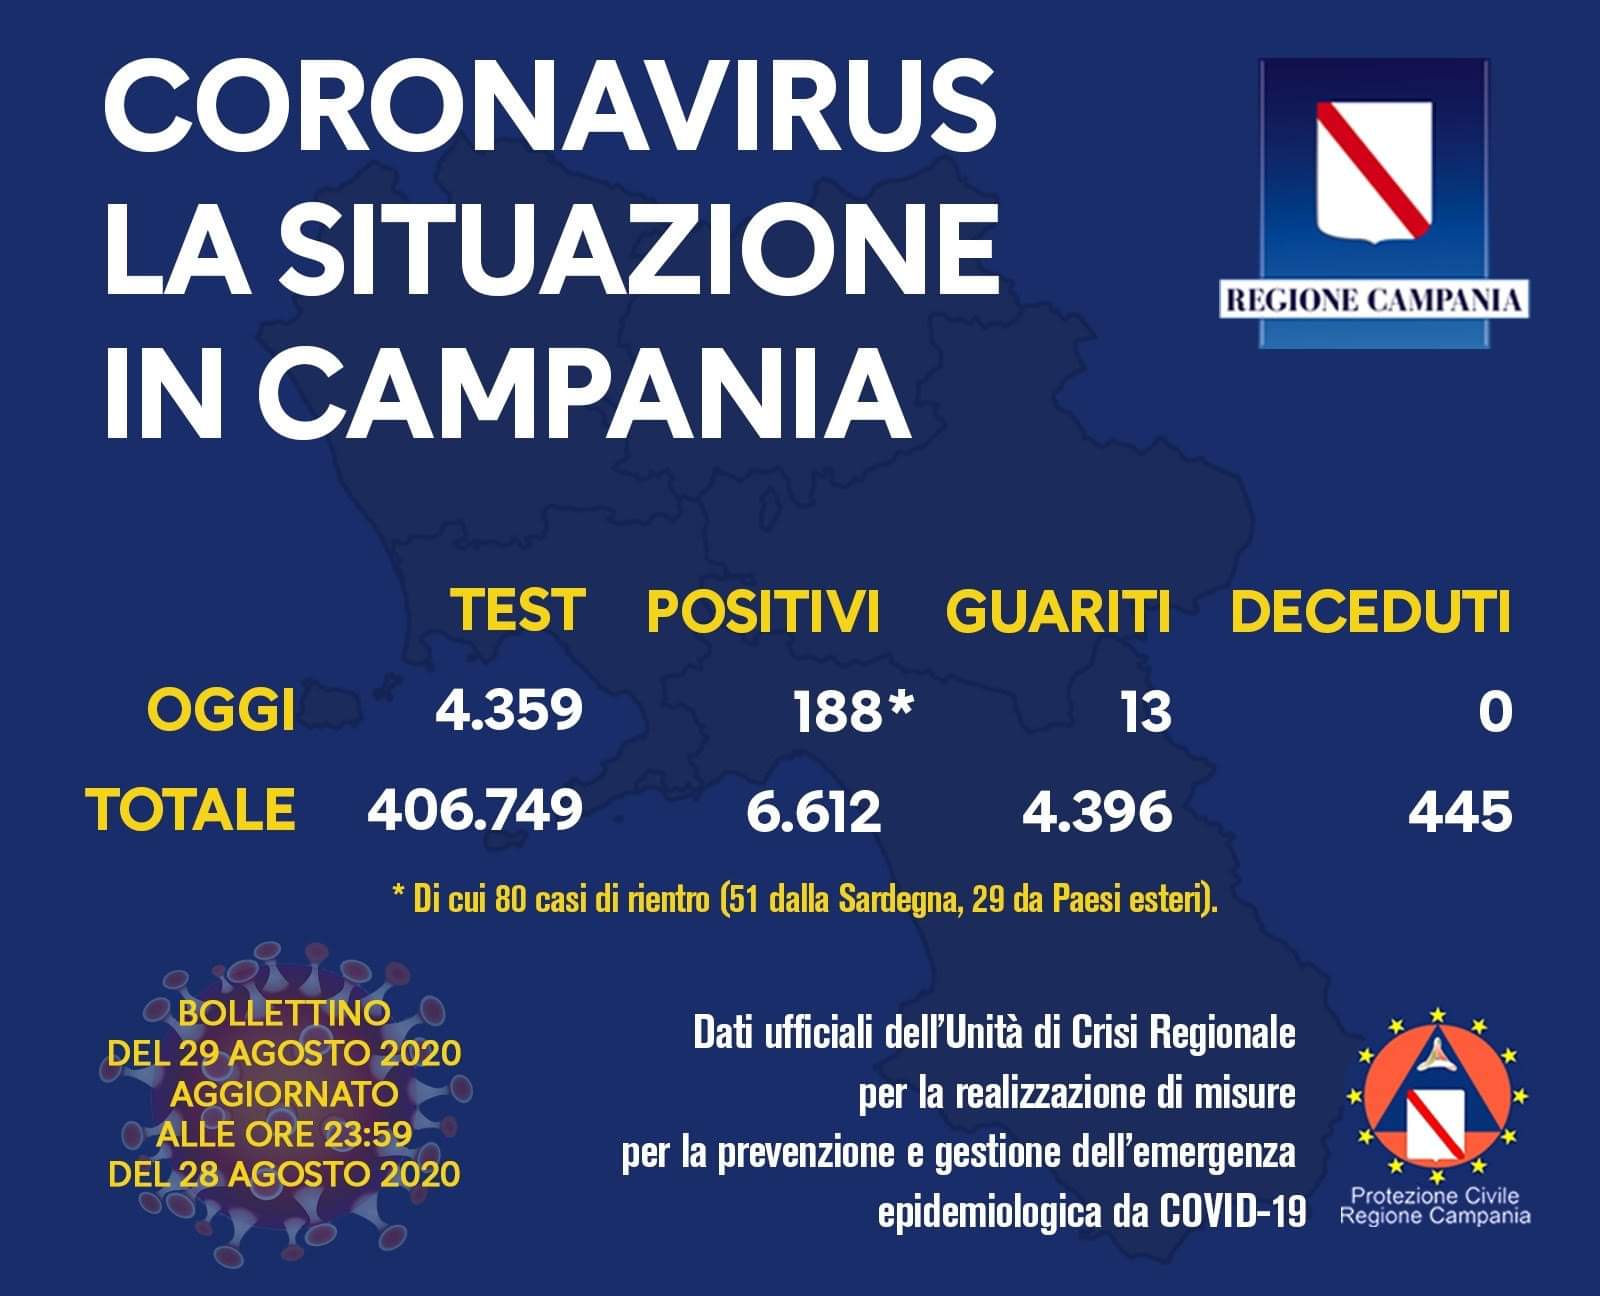 Coronavirus in Campania, i dati del 28 agosto: 188 nuovi positivi